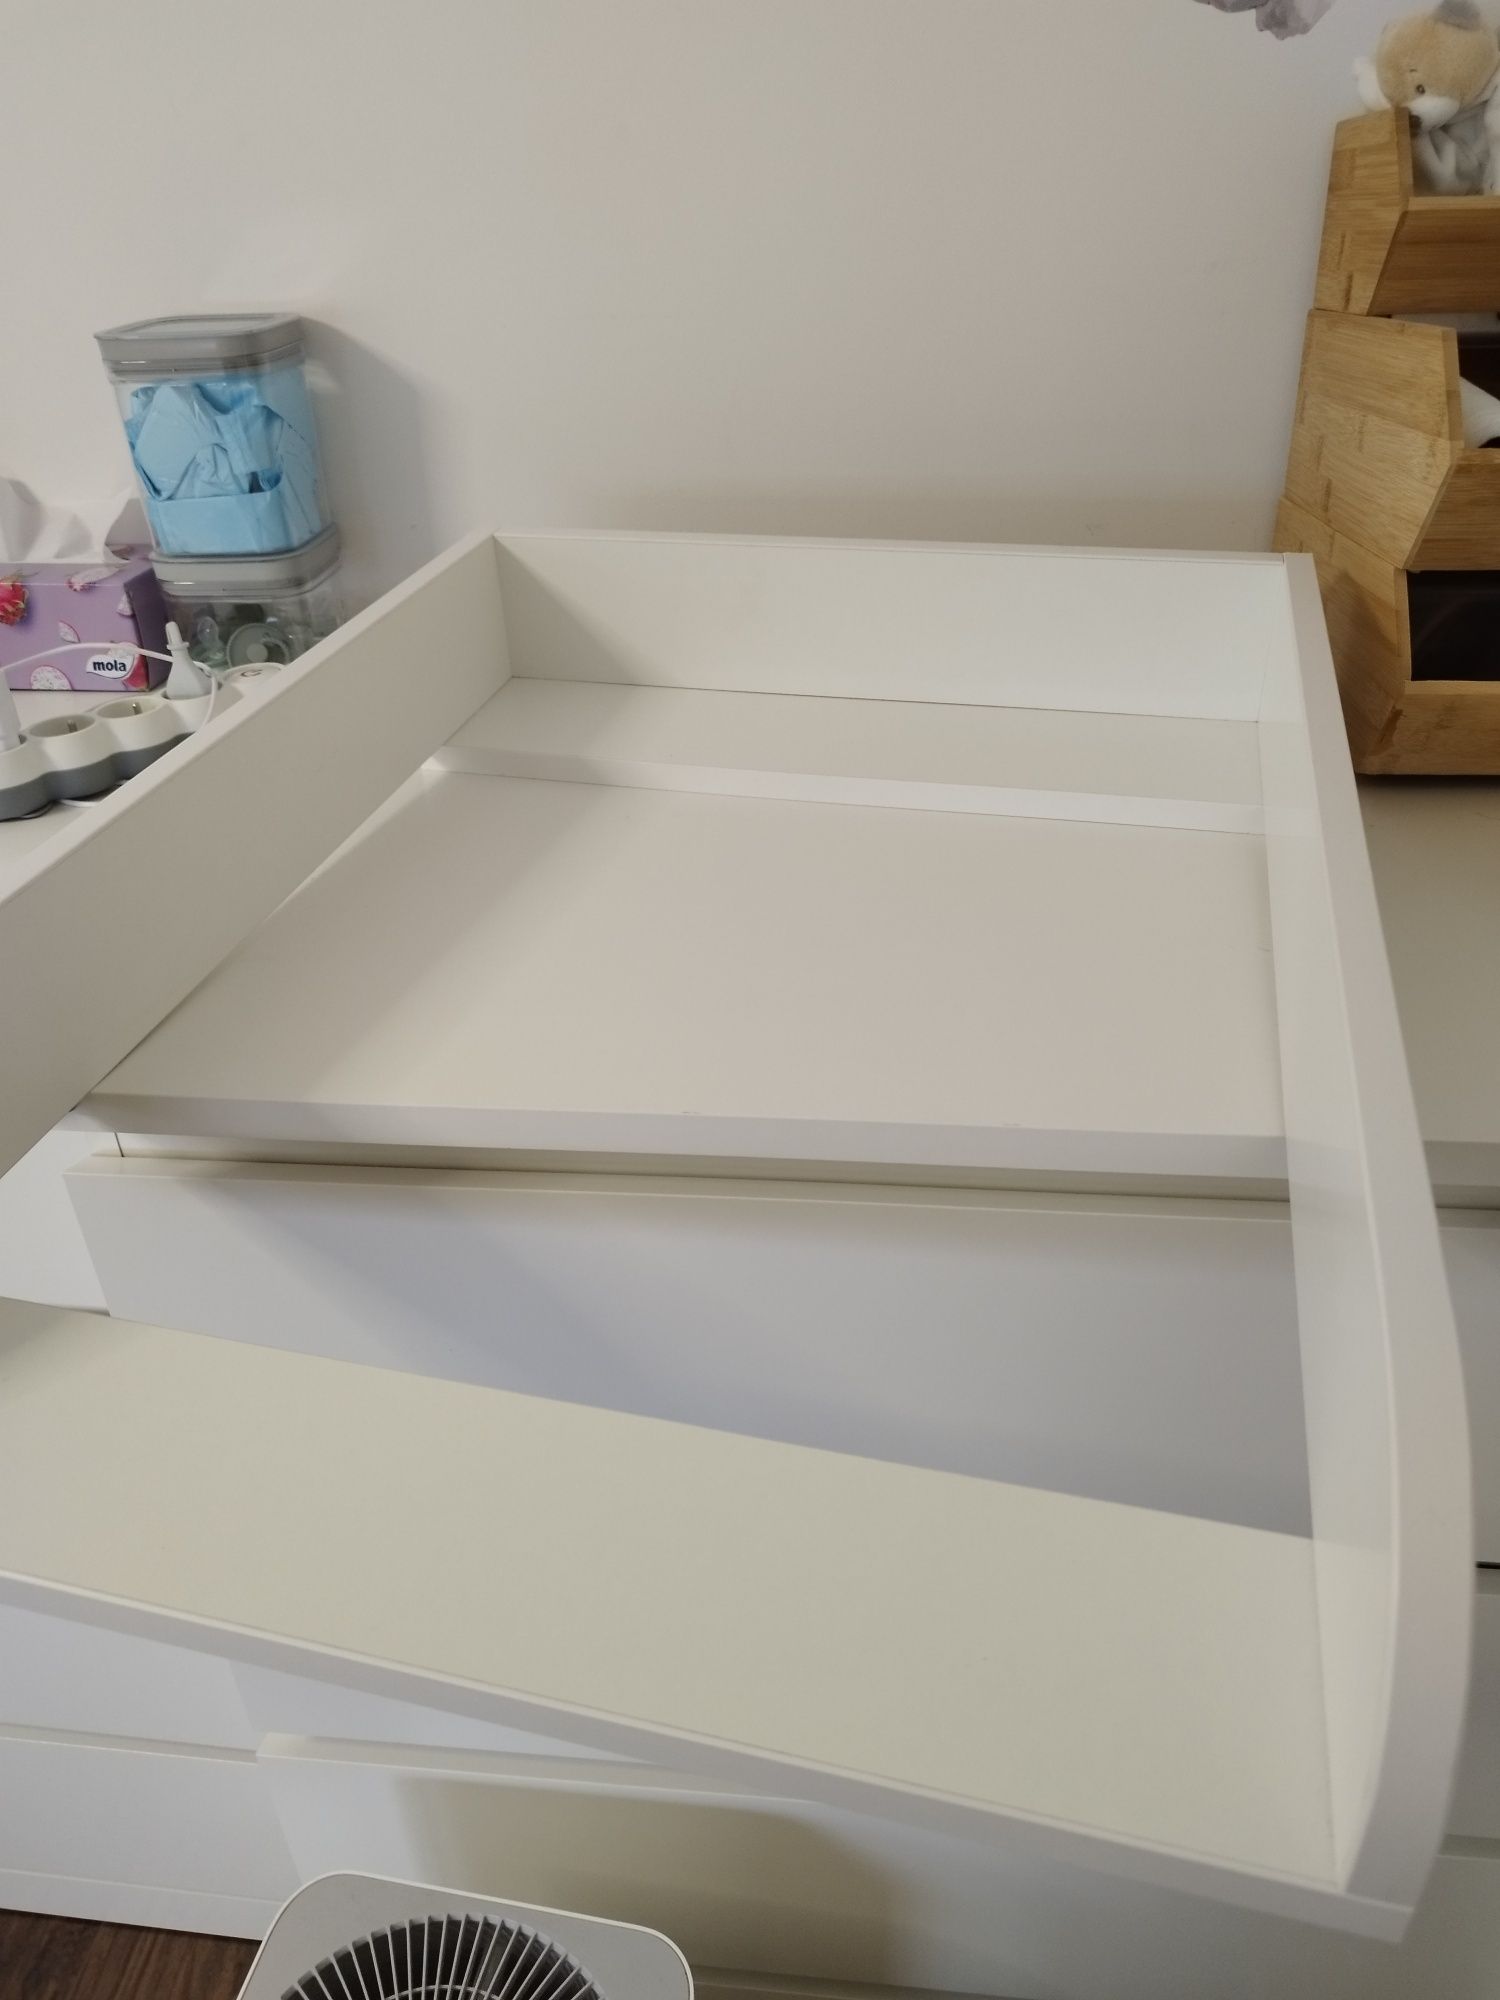 Nakładka przewijak na komodę malm Ikea